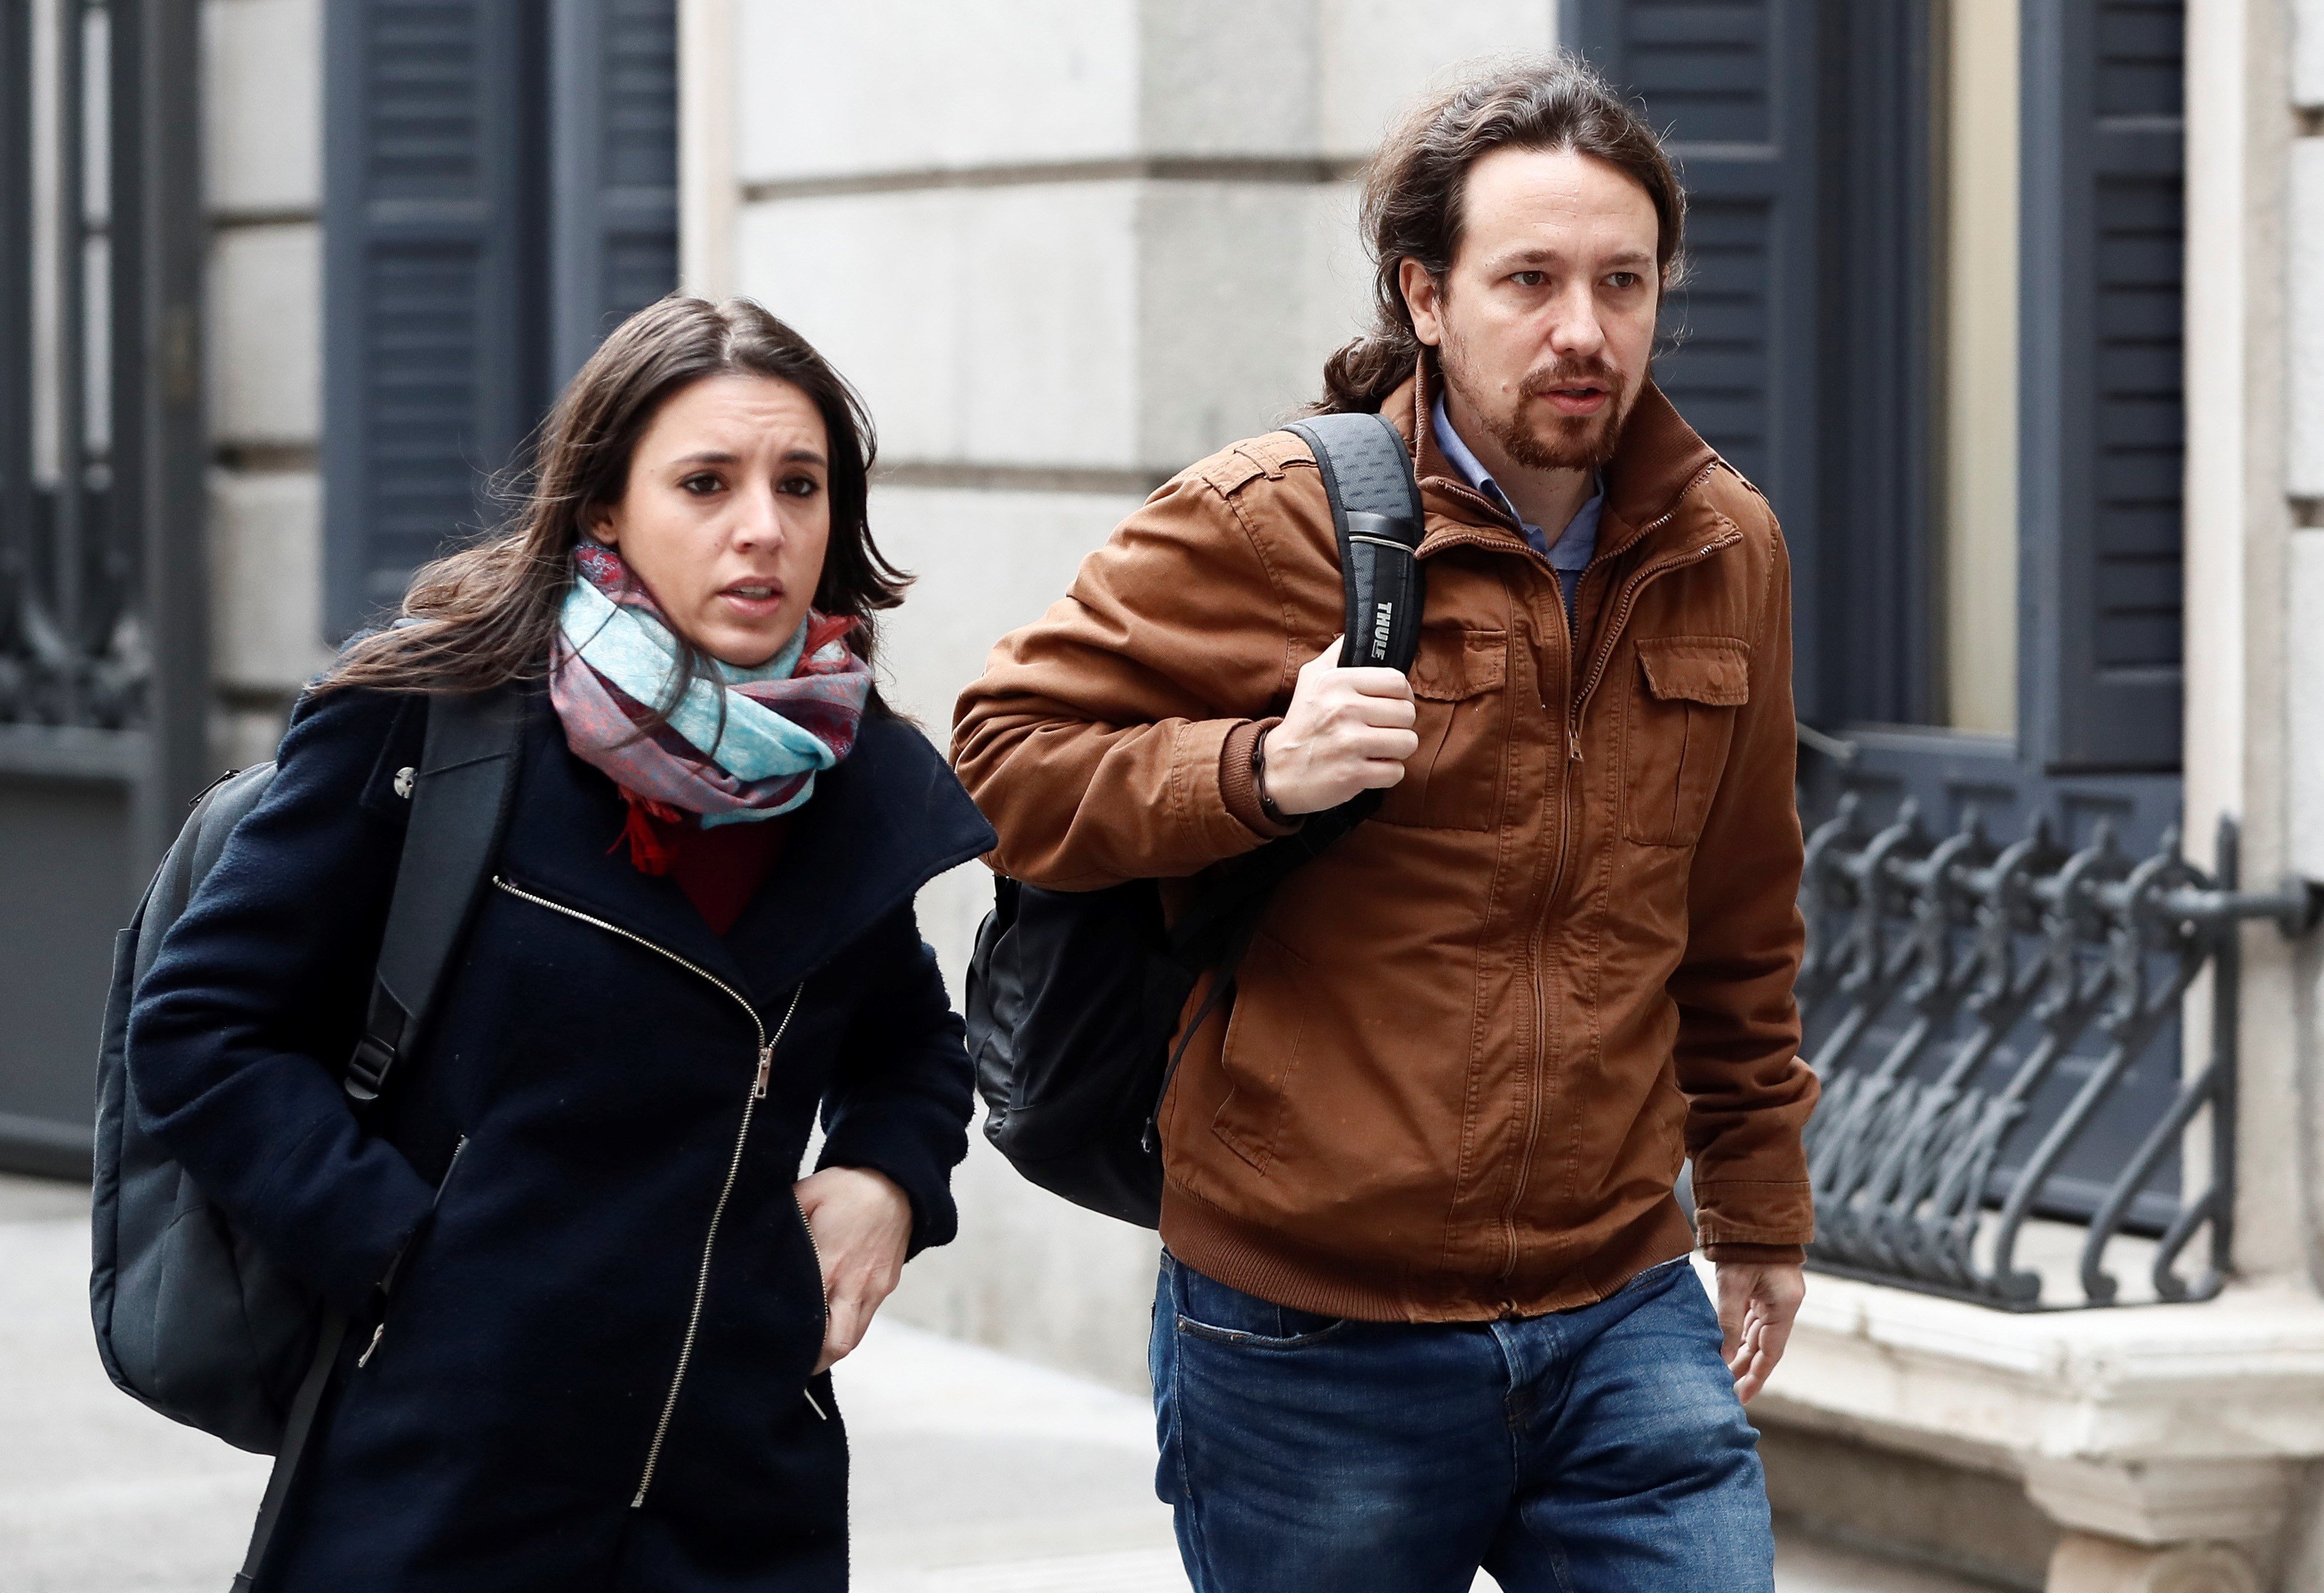 Las bases de Podemos decidirán el futuro político de Iglesias y Montero entre el martes y el domingo